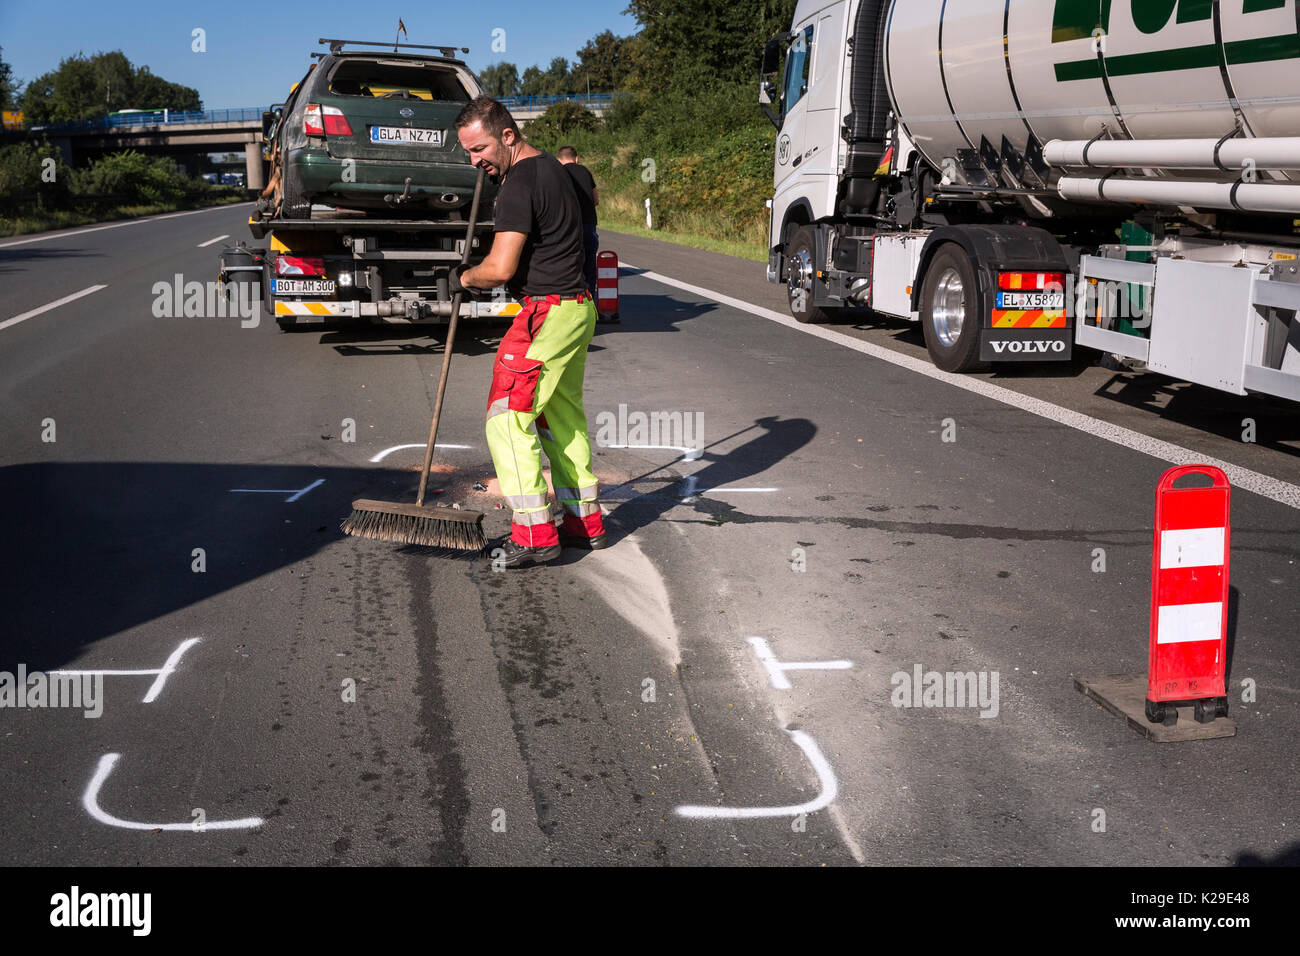 Les agents de police de la police de l'autoroute à Recklinghausen a commencé l'enregistrement d'accidents sur les lieux de l'accident sur l'autoroute A2 Accès restreint Banque D'Images